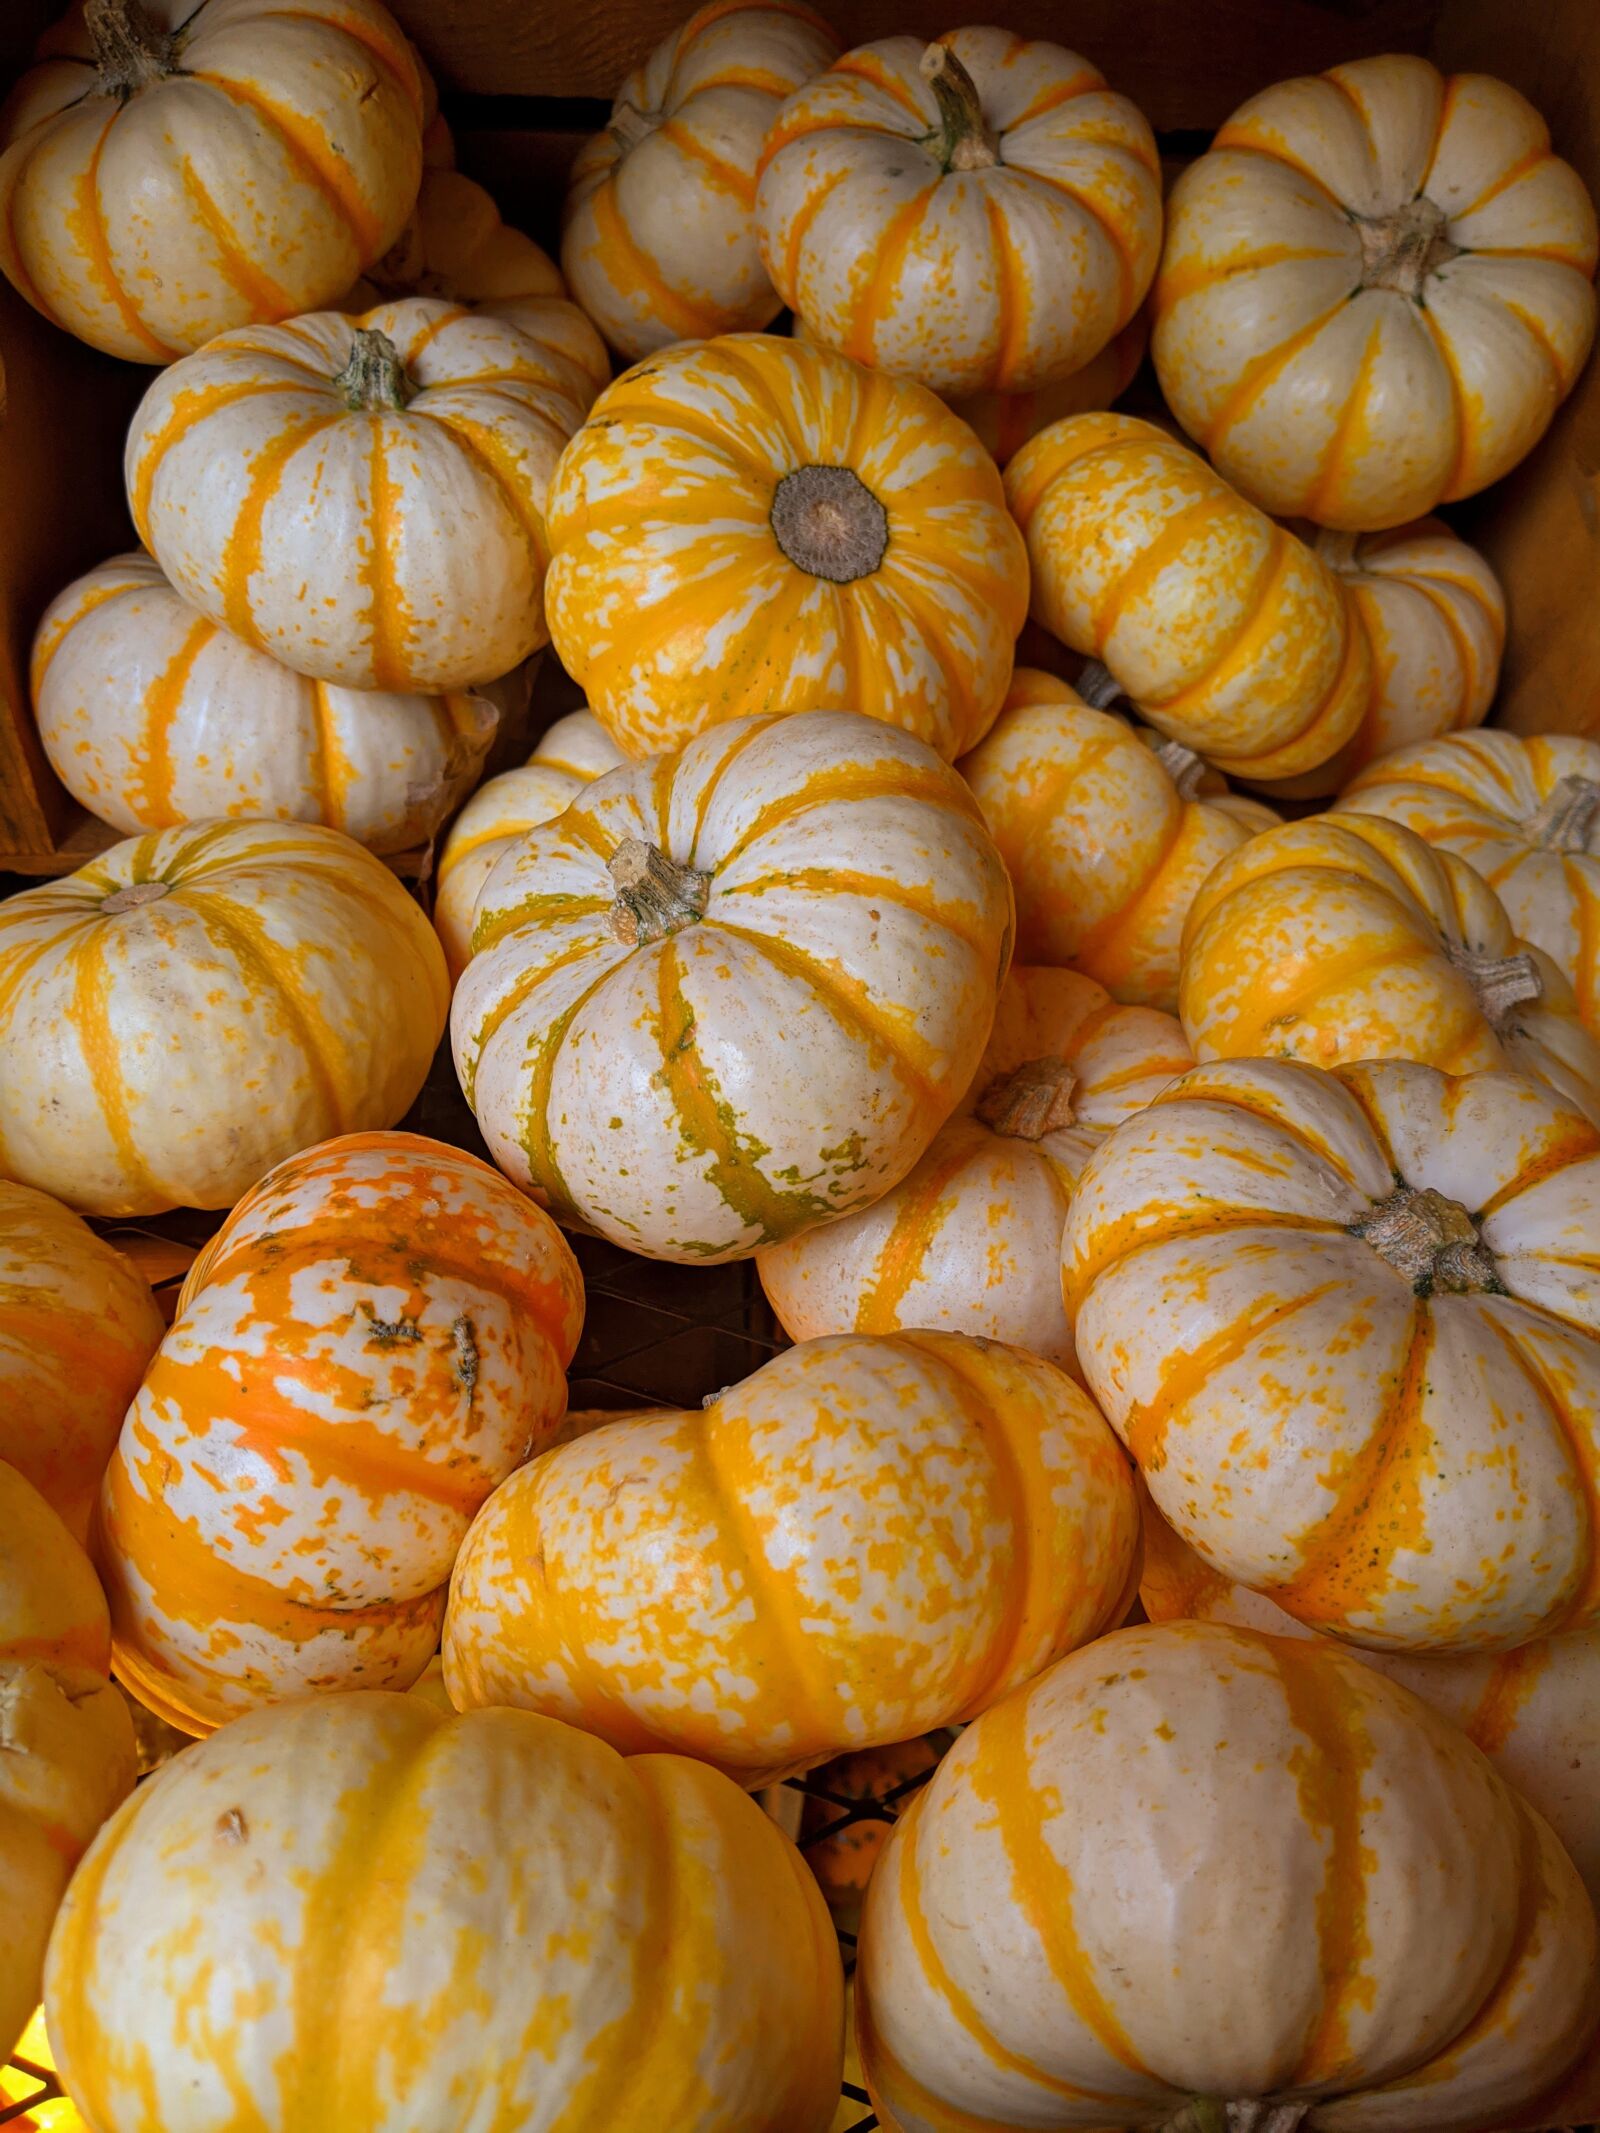 Google Pixel 3 XL sample photo. Pumpkins, striped pumpkins, gourds photography